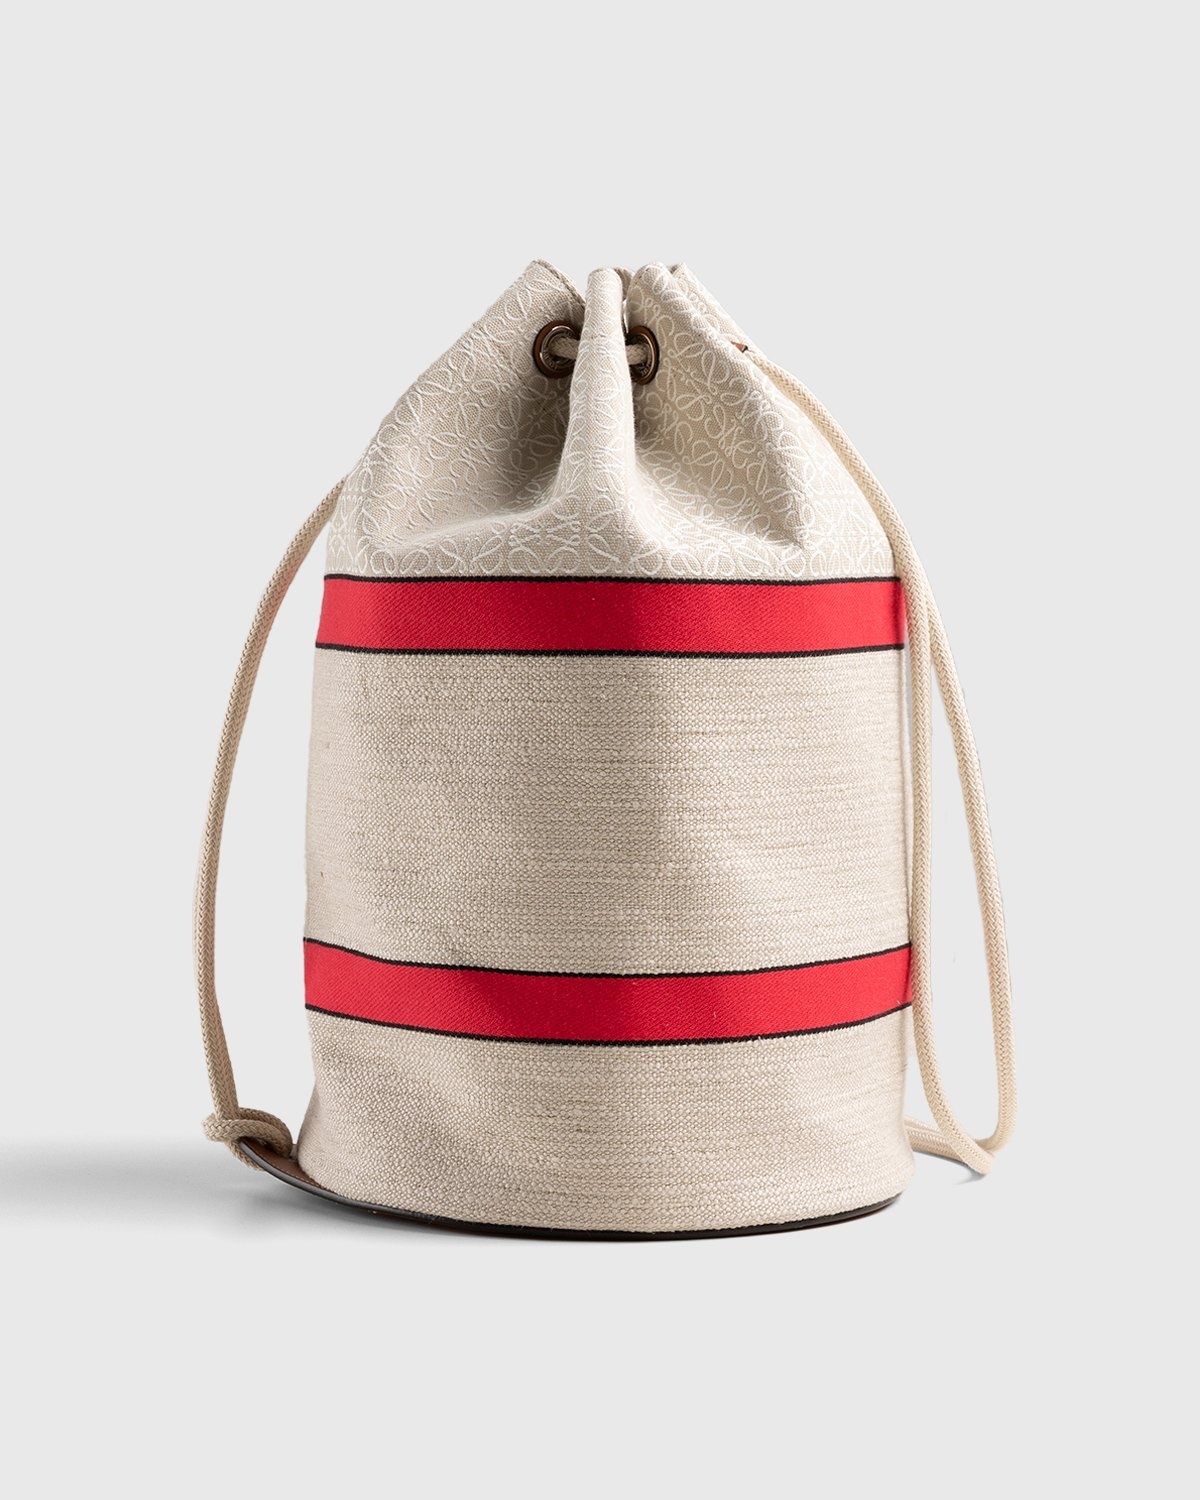 Loewe – Paula's Ibiza Sailor Bag Ecru/Red - Bags - Red - Image 2